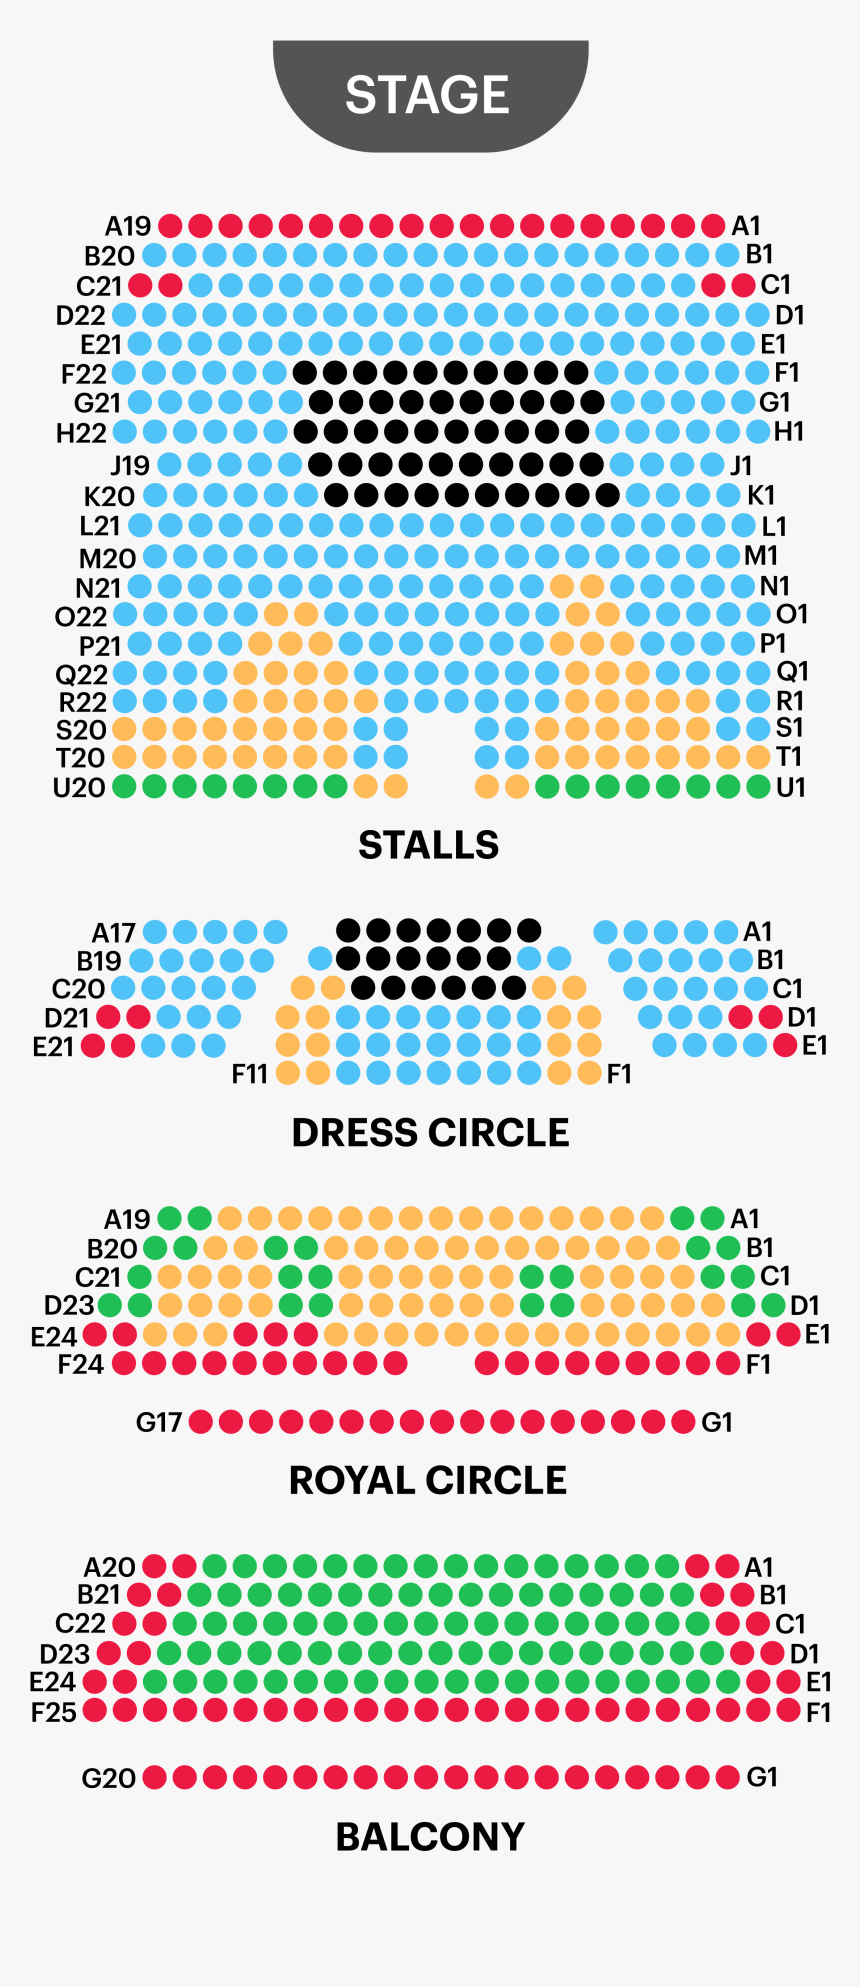 Harold Theatre Seating Plan - Harold Pinter Seating Plan, HD Png Download, Free Download